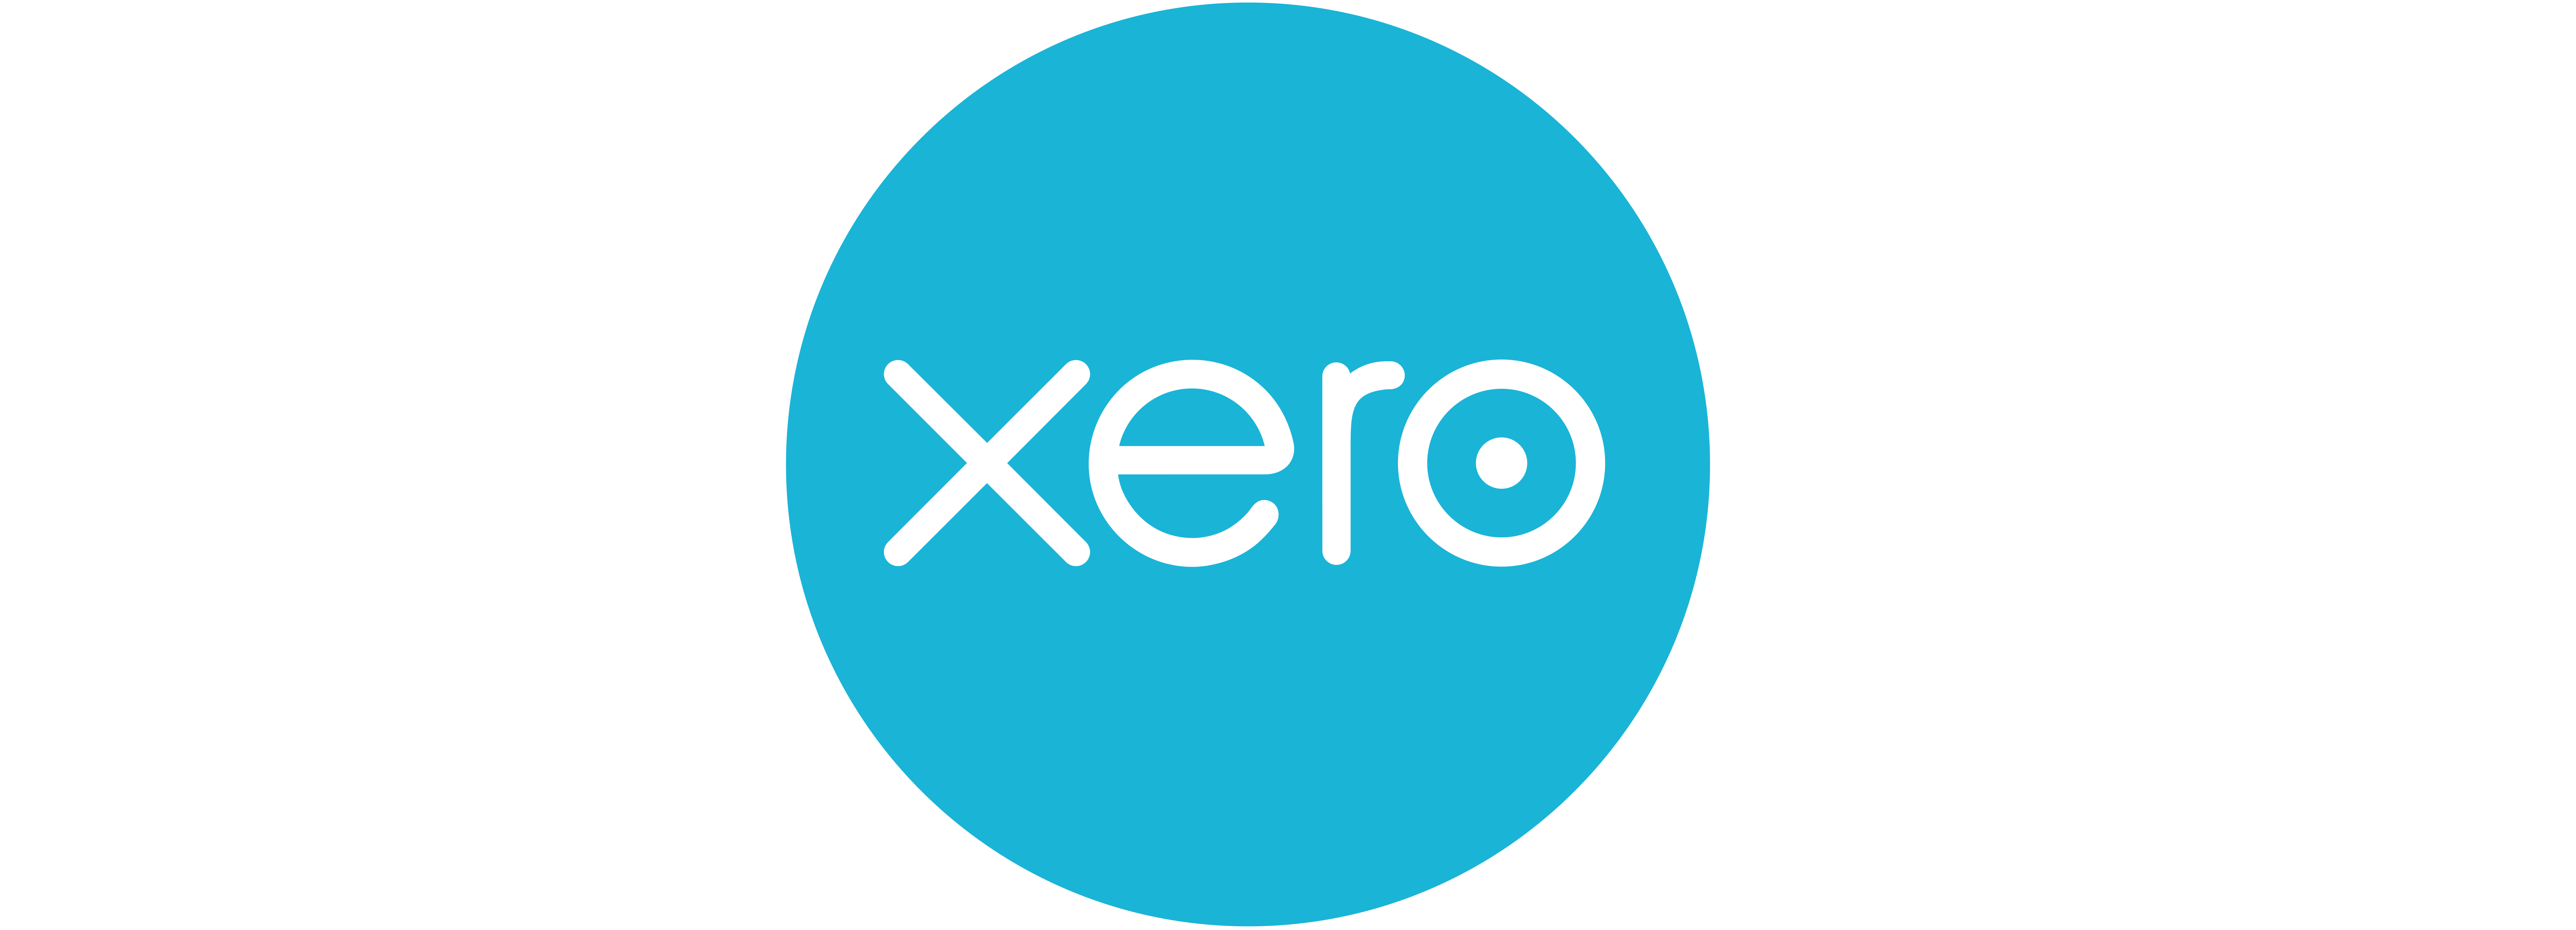 Xero_software_logo_1